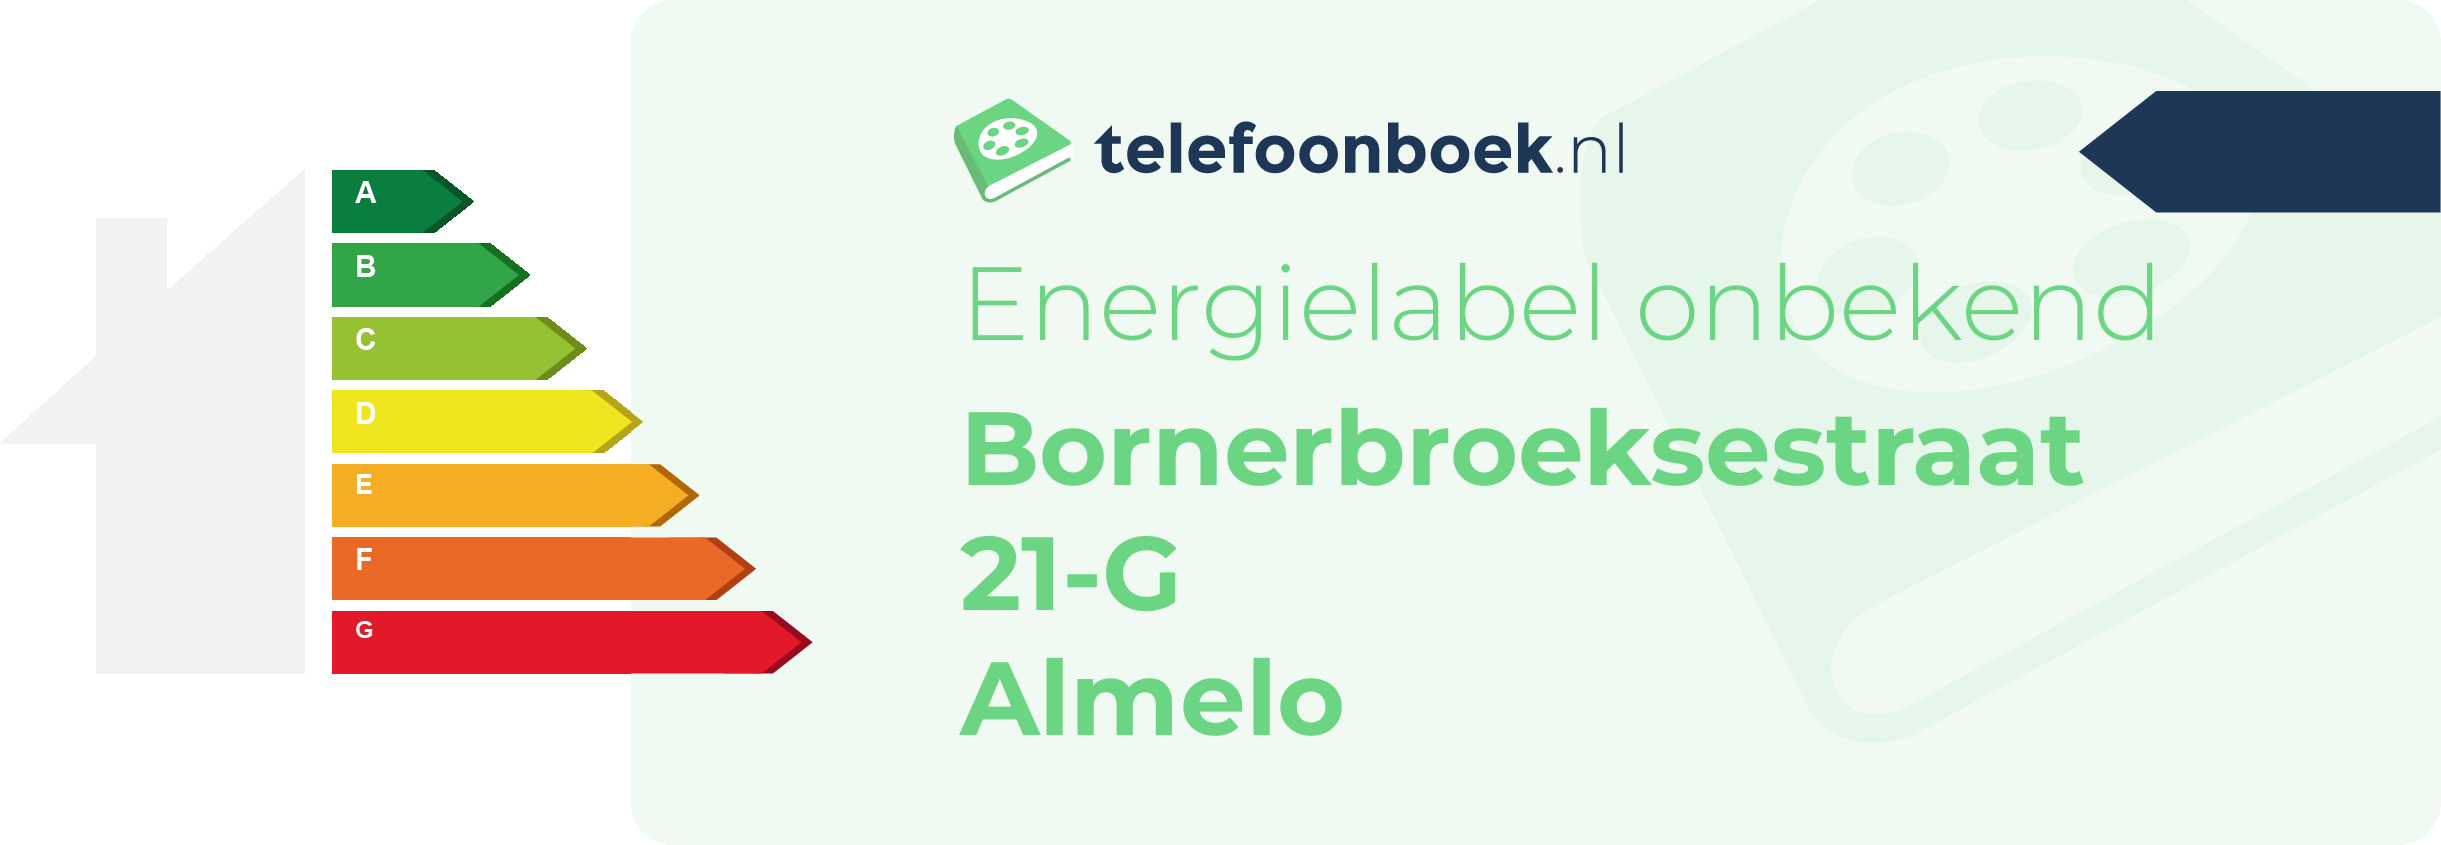 Energielabel Bornerbroeksestraat 21-G Almelo